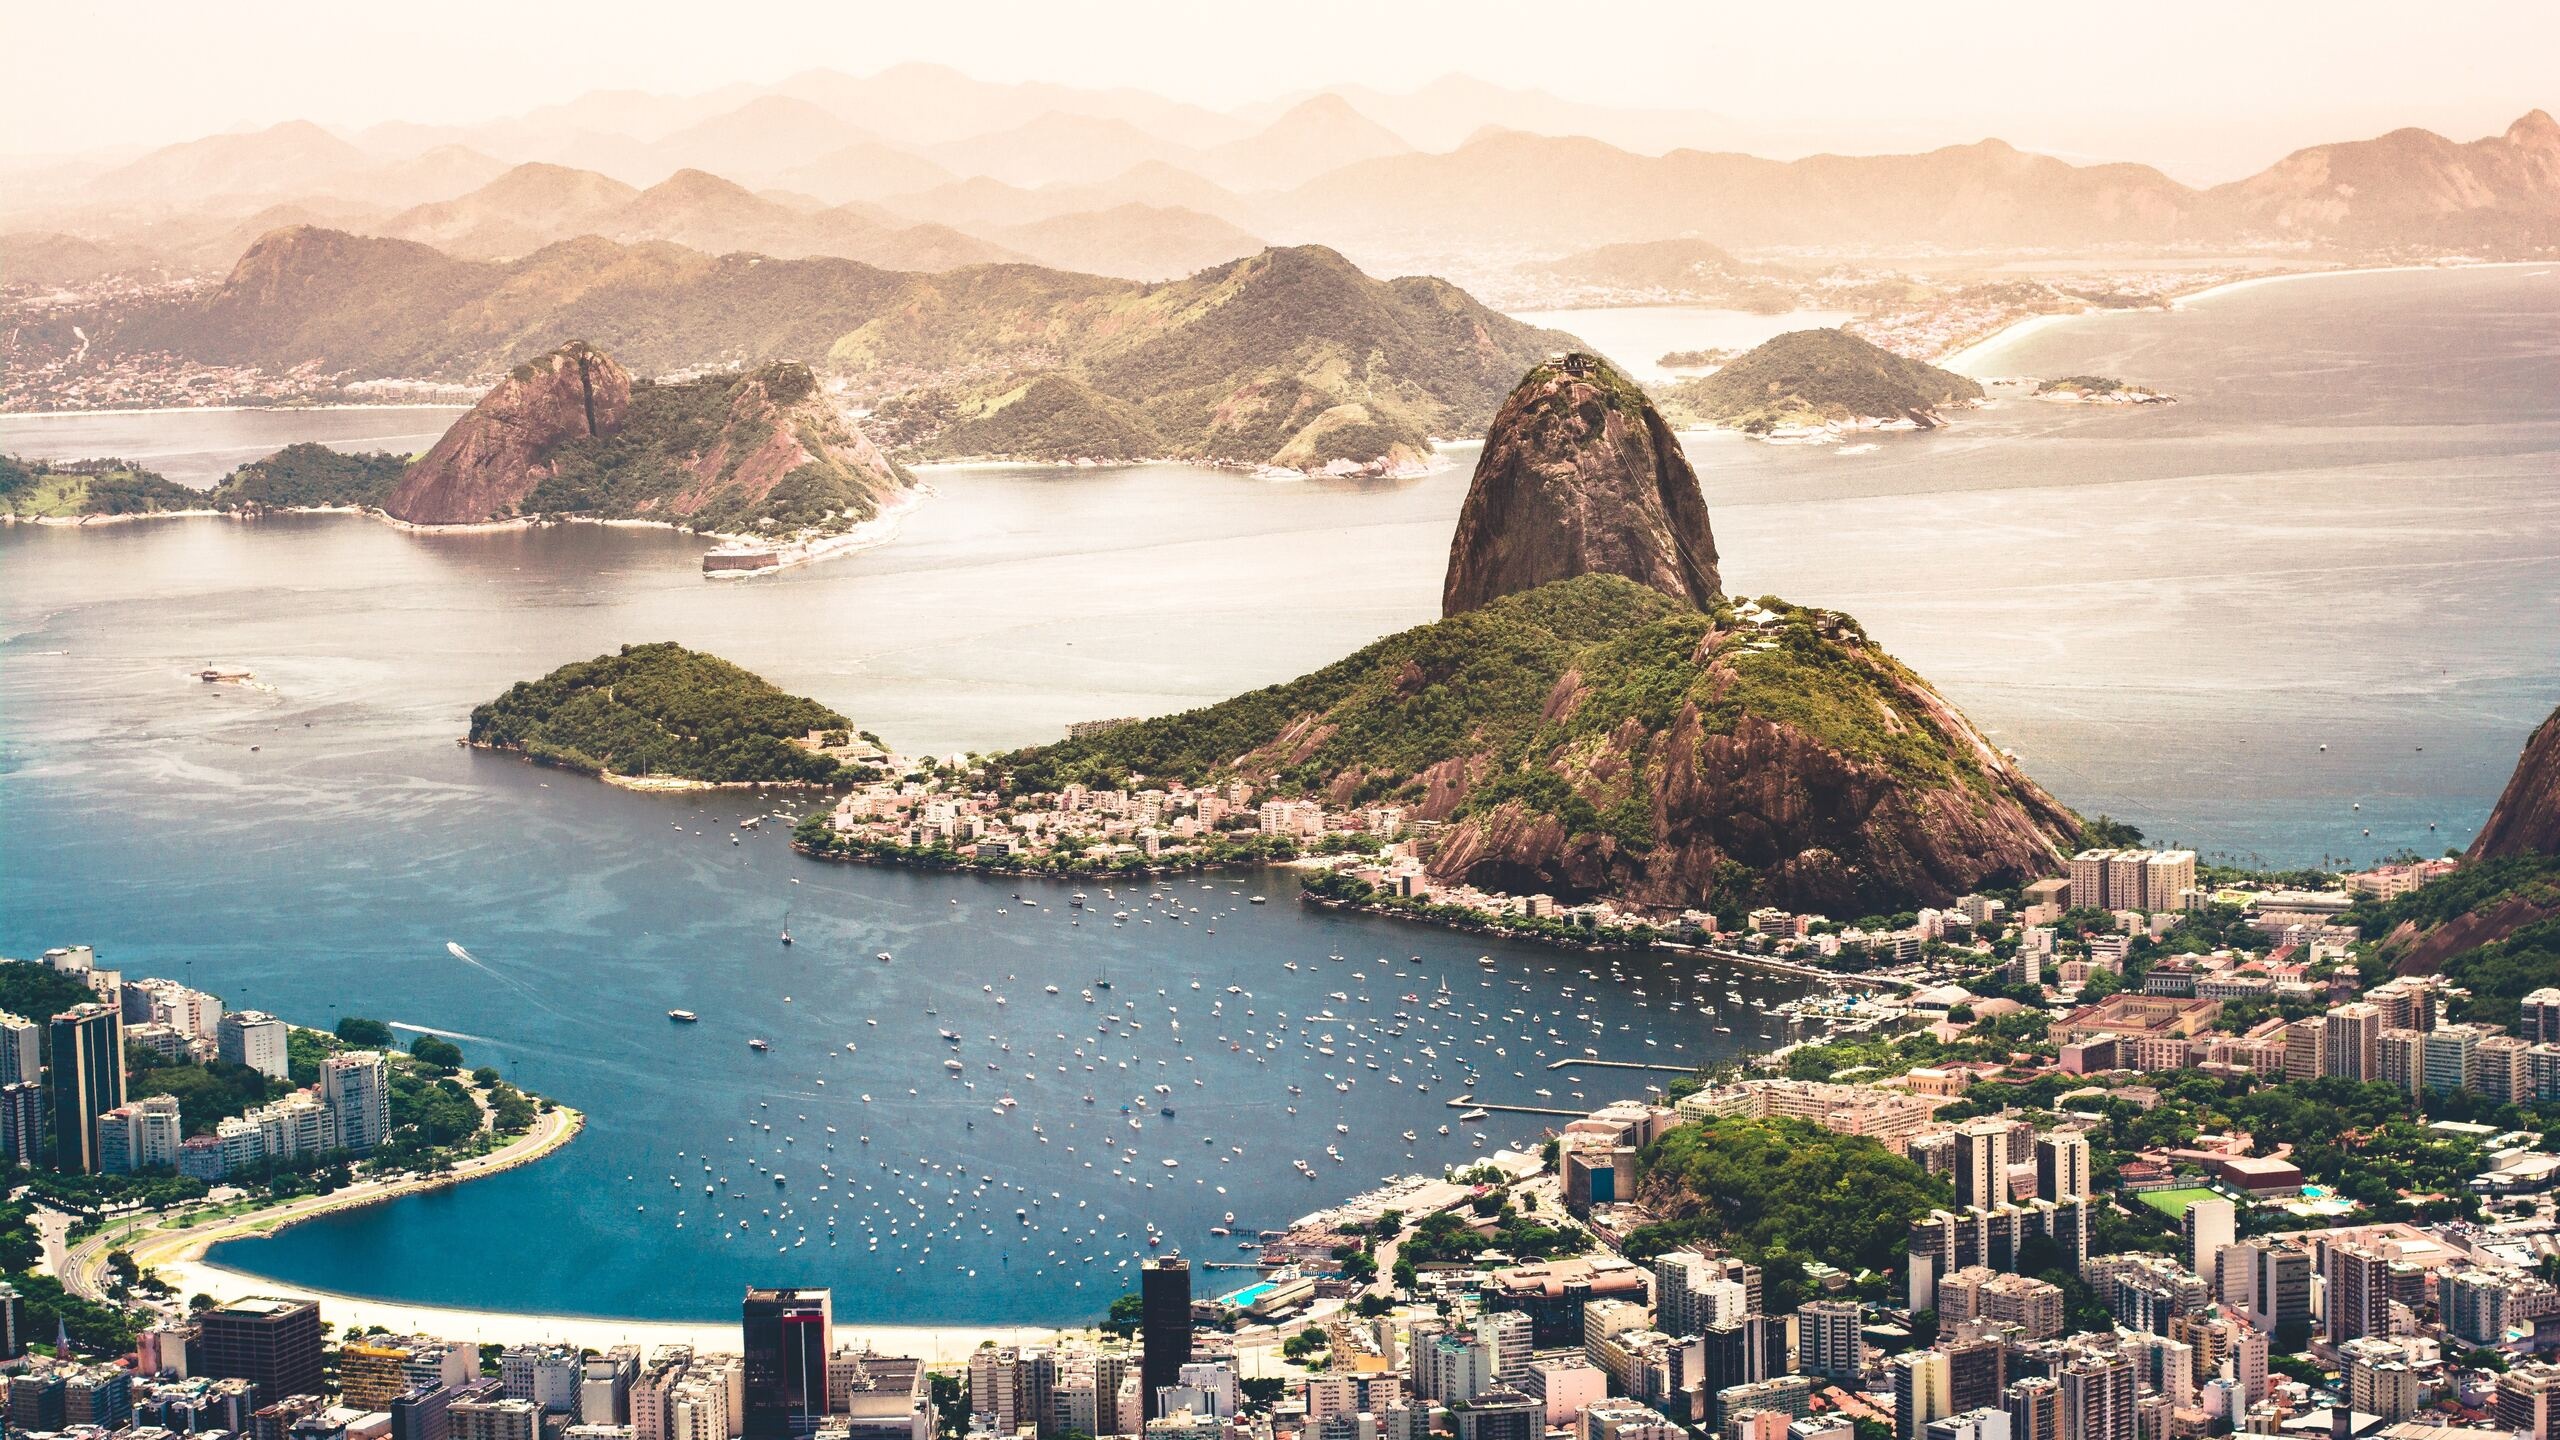 Rio De Janeiro, Brazil, 1440p resolution, High-definition wallpapers, 2560x1440 HD Desktop